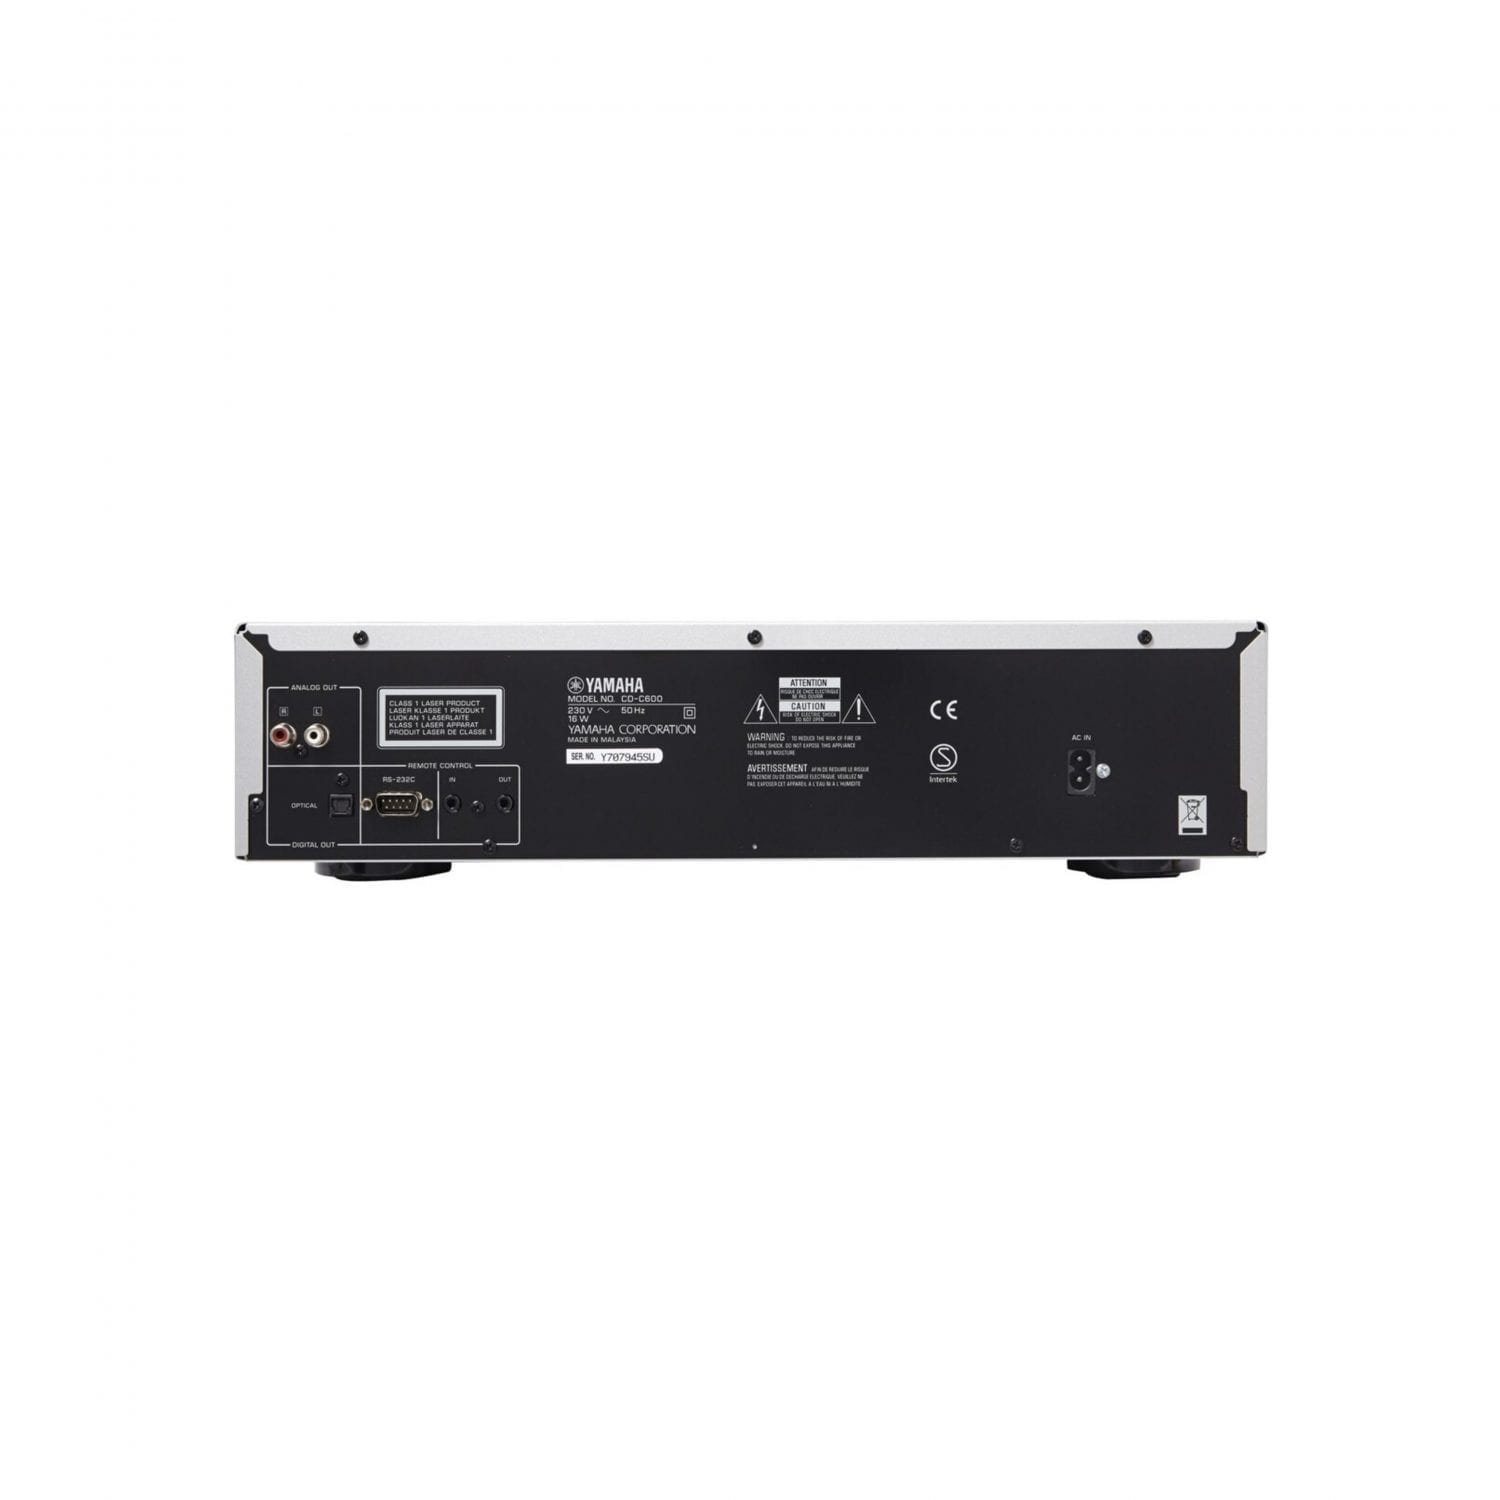 DENON DCD-600 Negro / Reproductor HiFi de CD